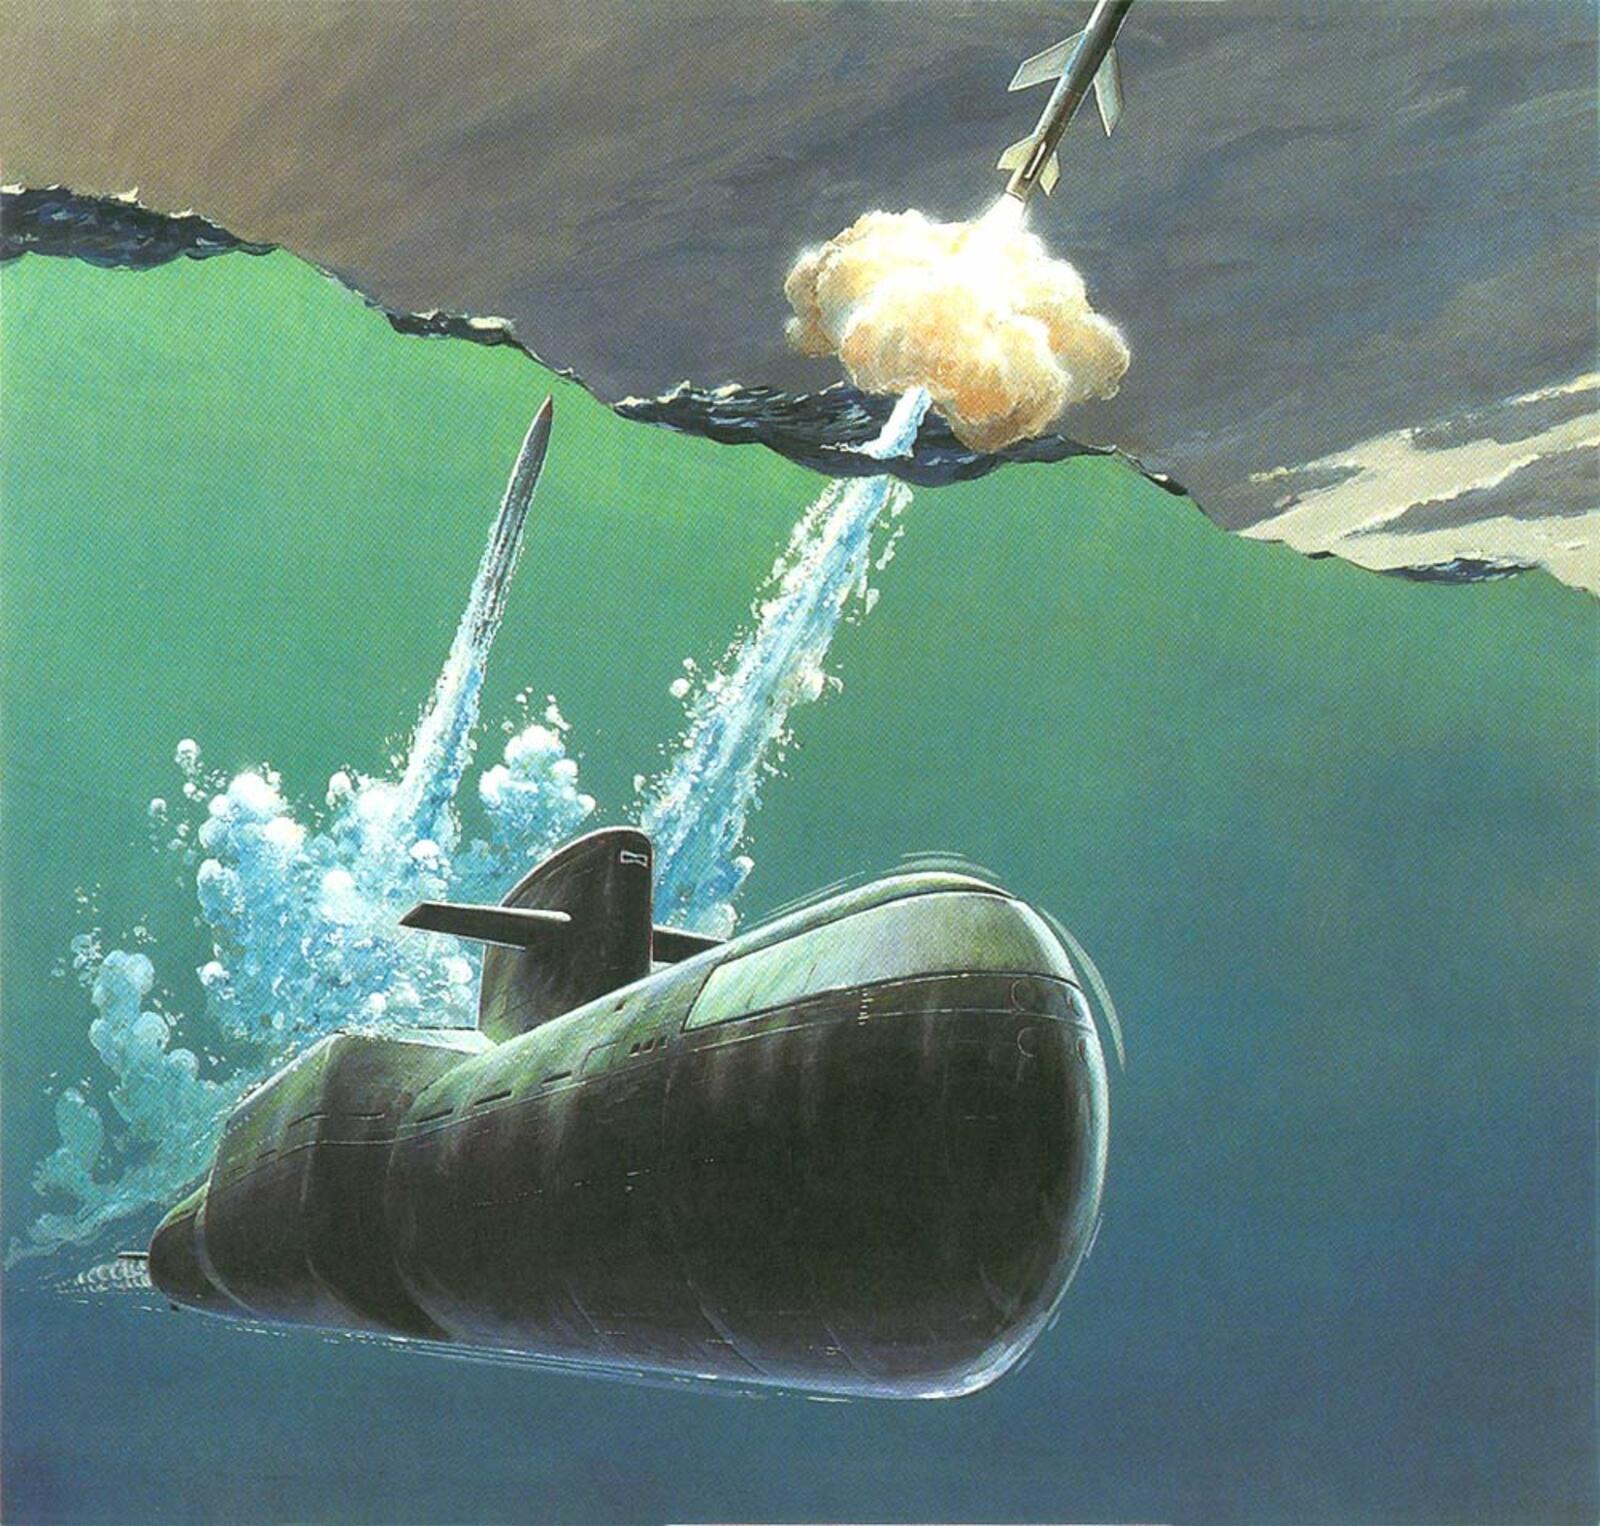 Рис. из издания Пентагона Soviet MilitaryPower, 1987 г. ПЛАРК К-420 пр. 667М YANKEE SIDECAR ведет огонь ракетами комплекса «Метеорит-М»